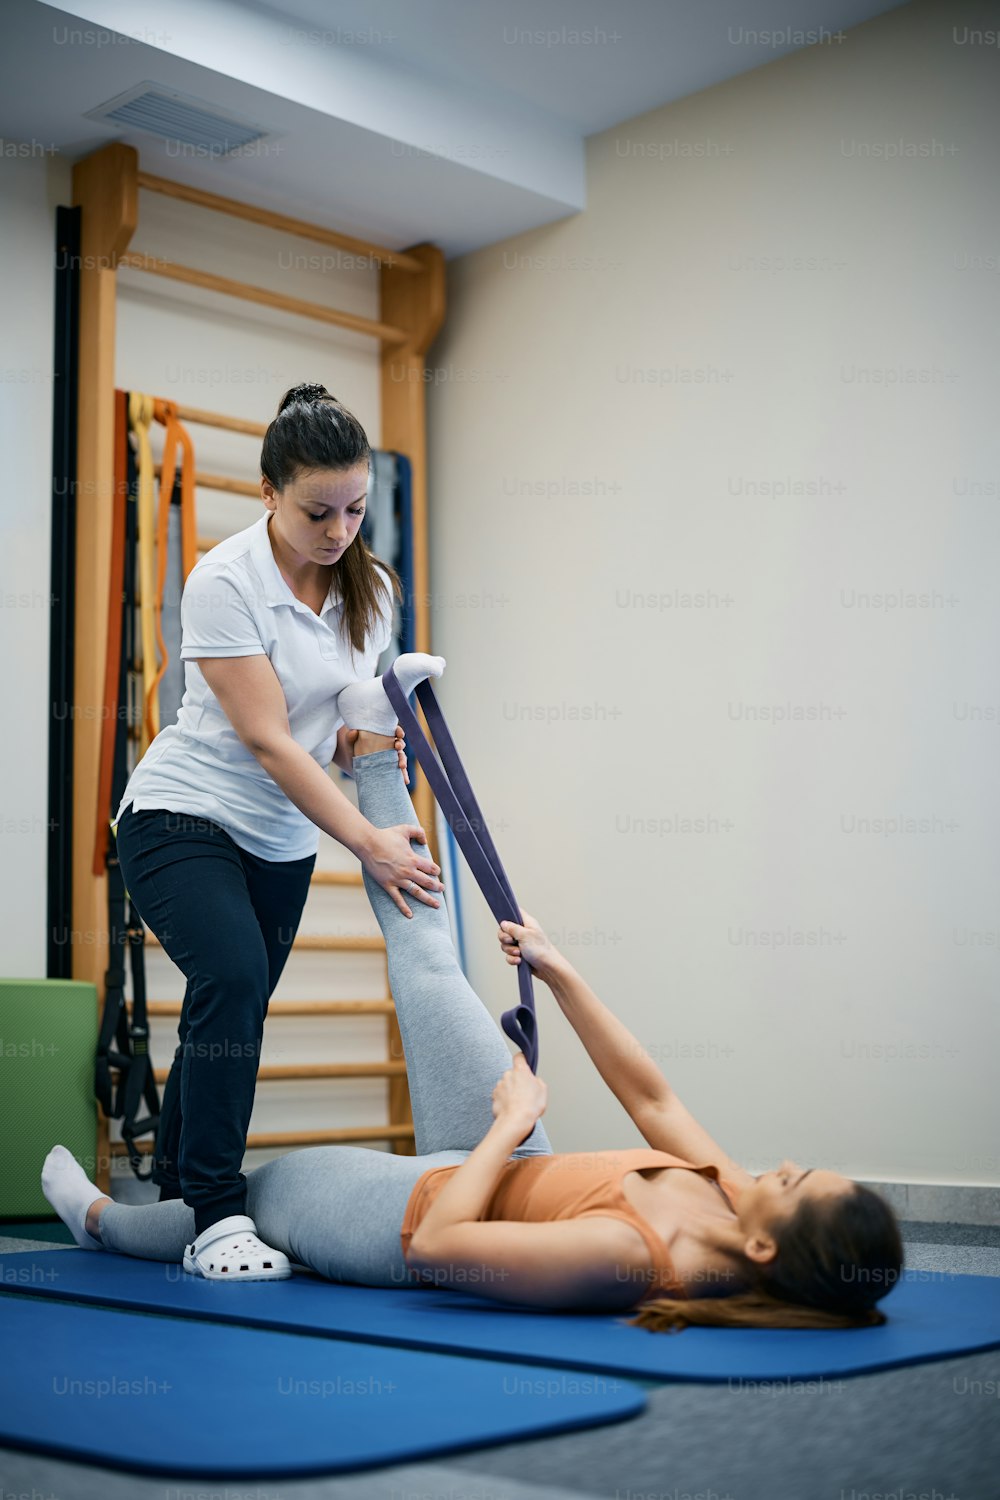 リハビリテーションセンターで理学療法士の助けを借りて脚を鍛えながらパワーバンドを使用する運動女性。